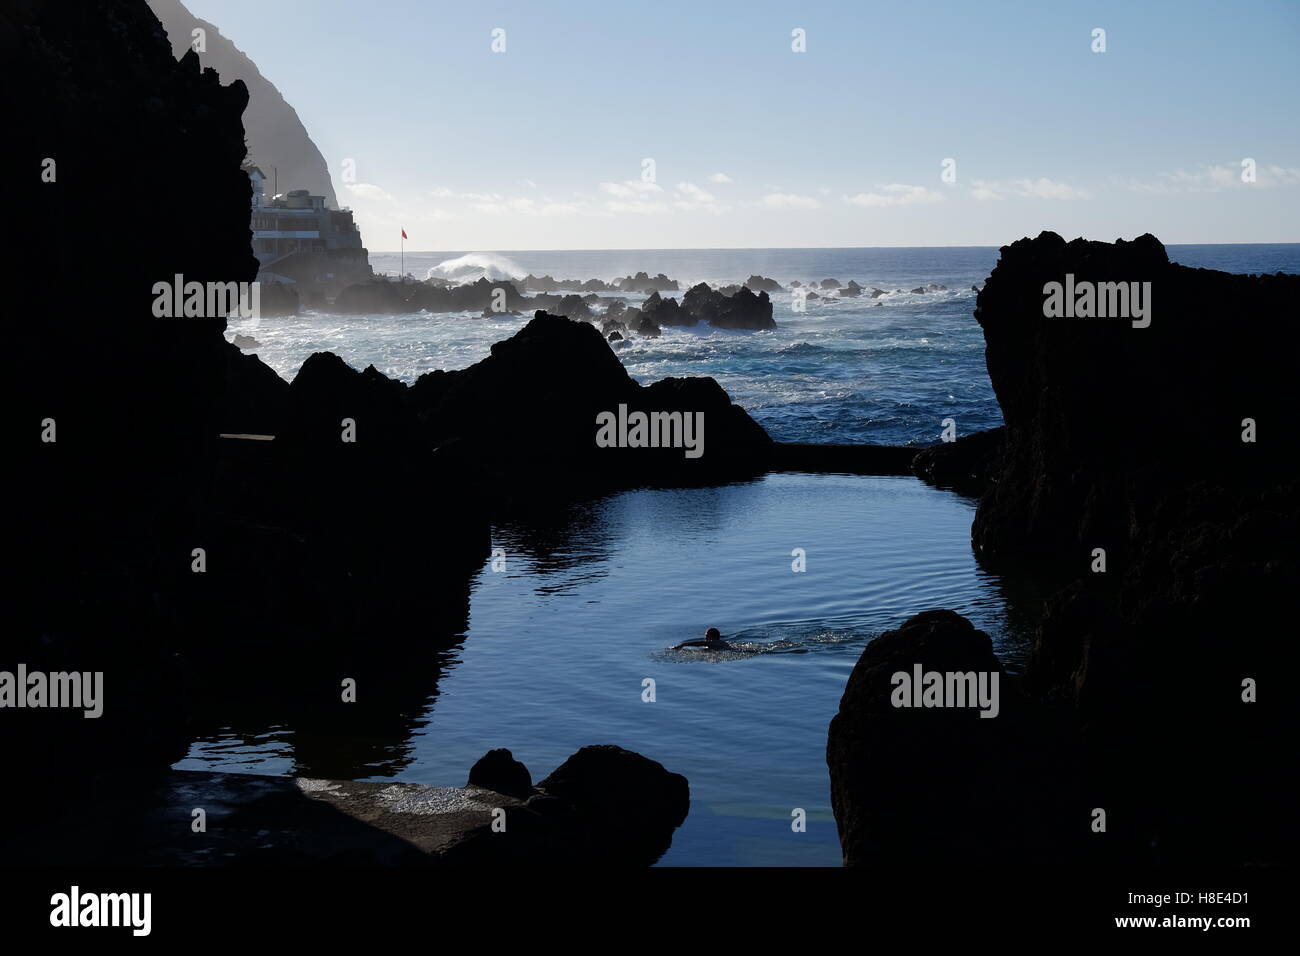 Nuotatore nuoto nelle piscine naturali di origine vulcanica in Porto Moniz, Madeira, Portogallo Foto Stock